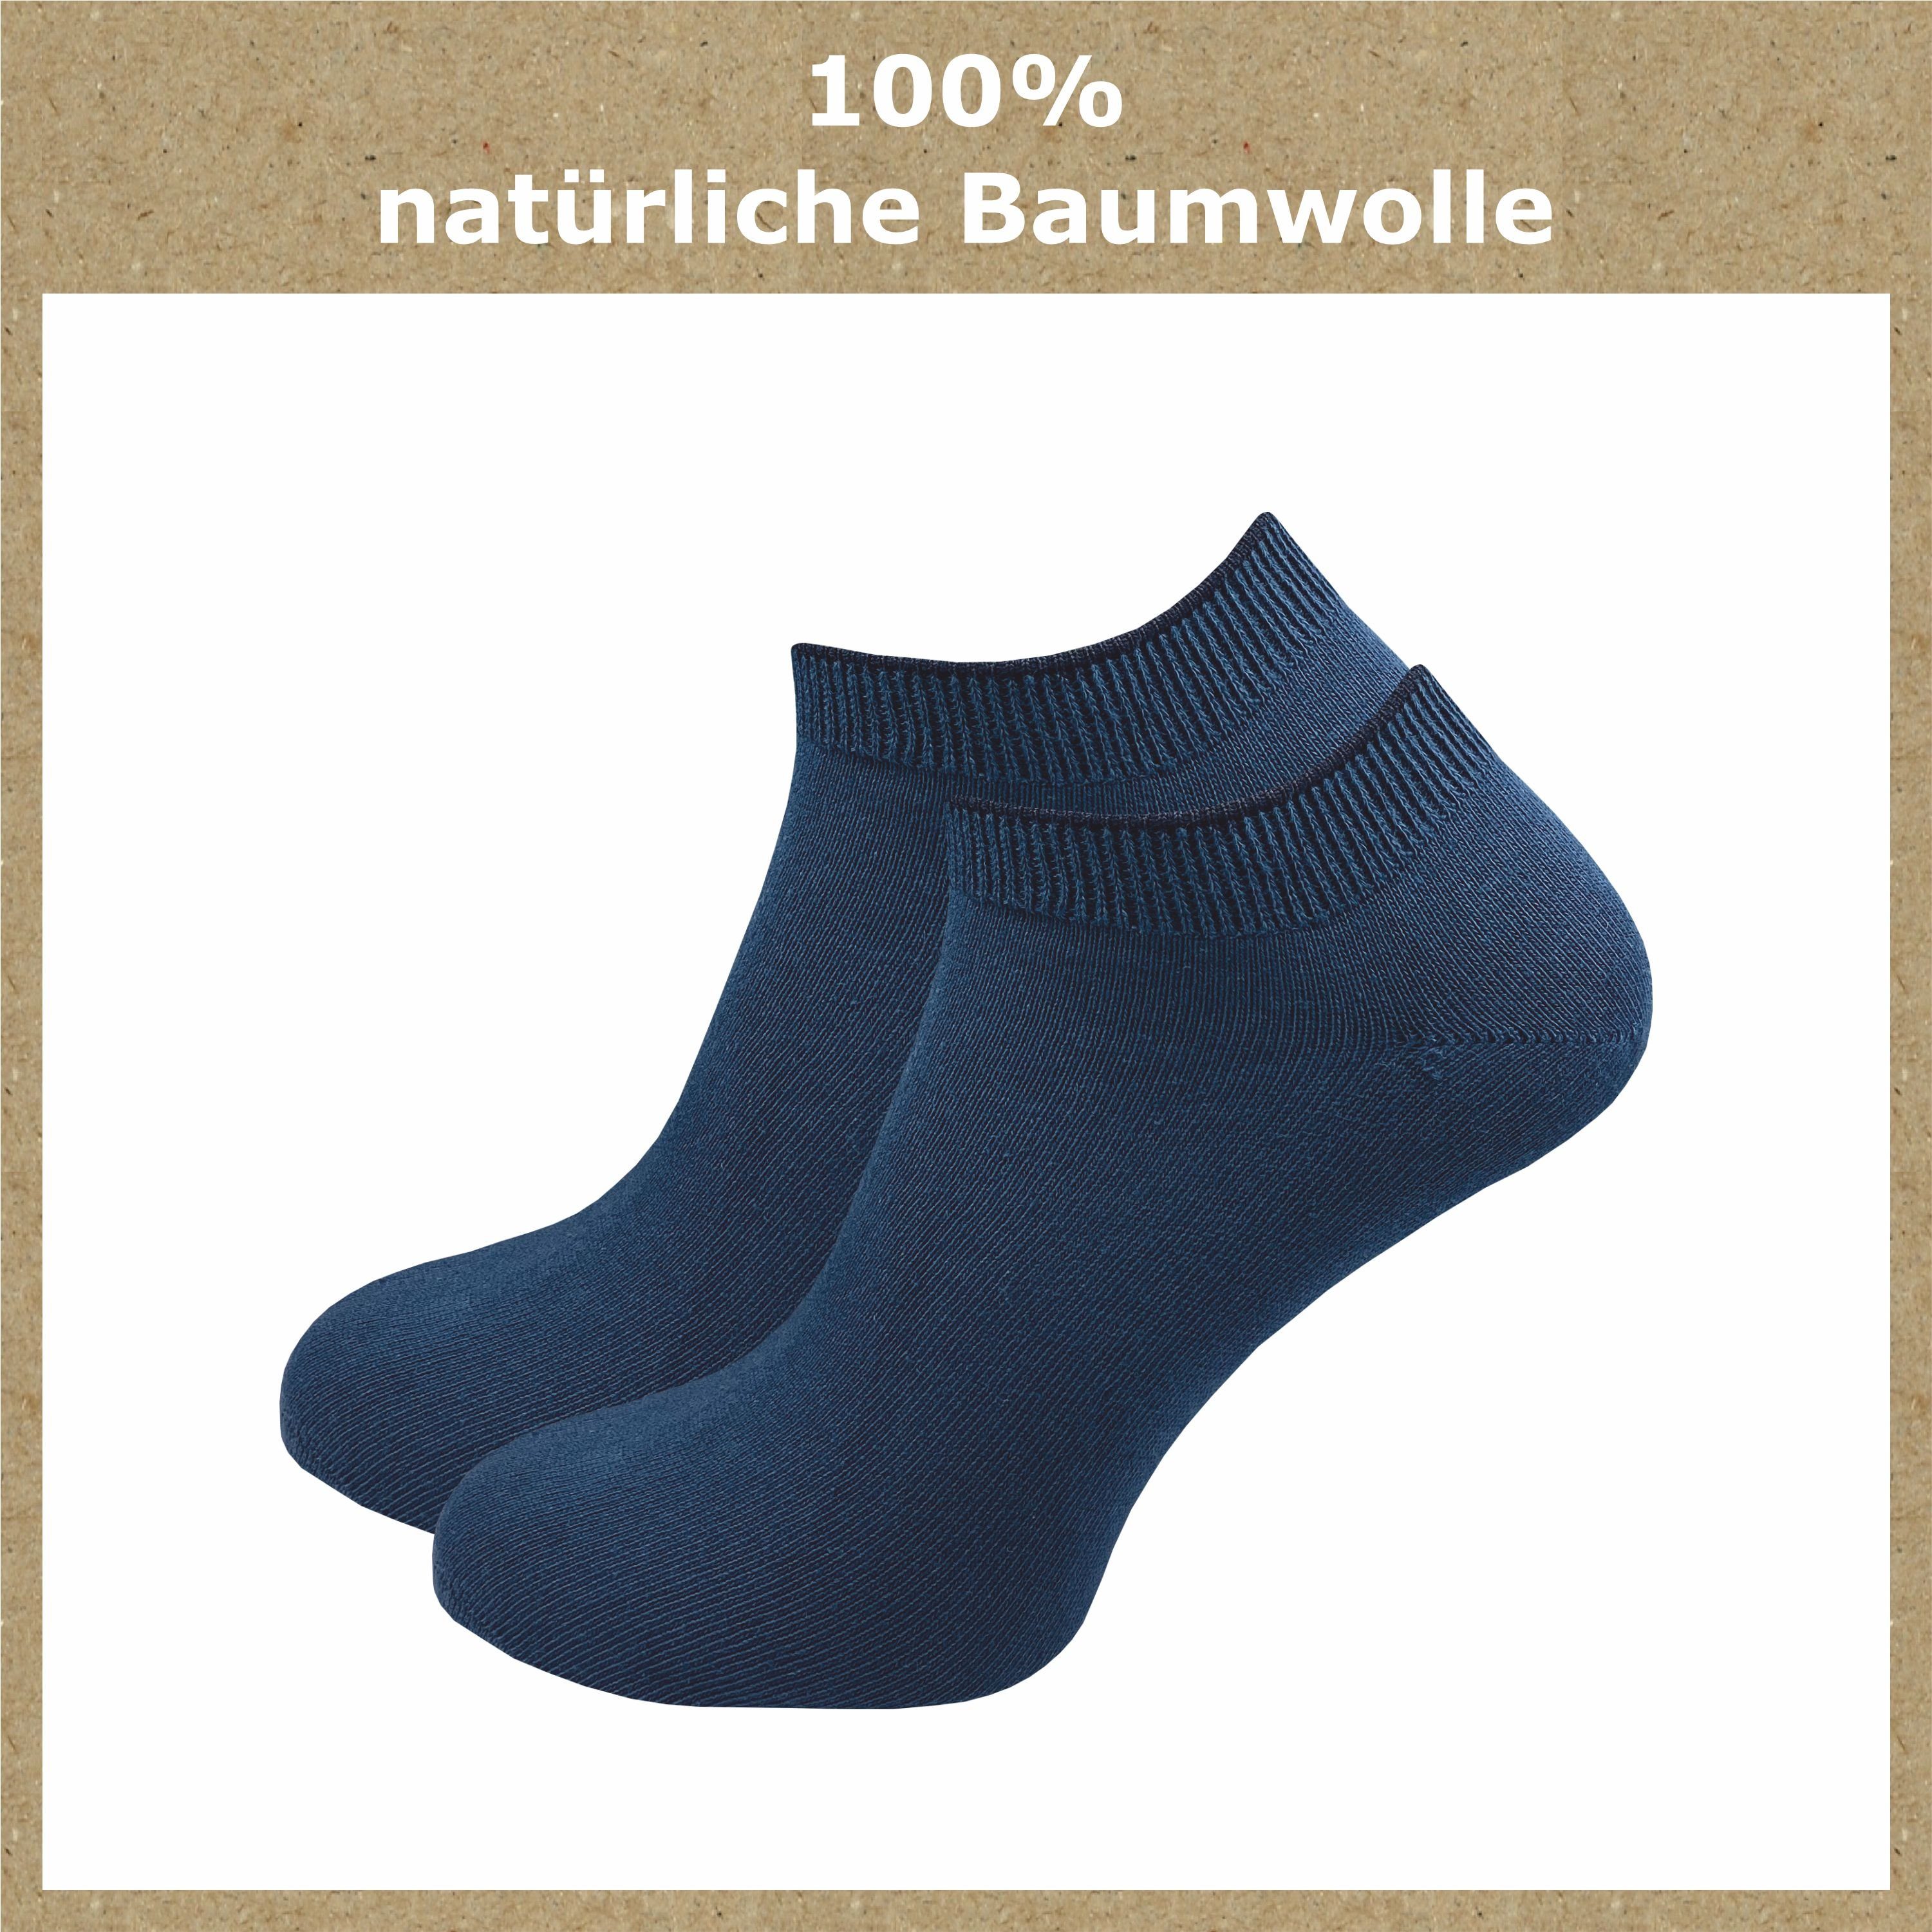 Sitz eine größer Baumwolle grau für & aus 100% - Sneakersocken blau Herren Nummer bestellen bitte (8 angenehmer, "Natur" Paar) Damen & in GAWILO enganliegender u.a.